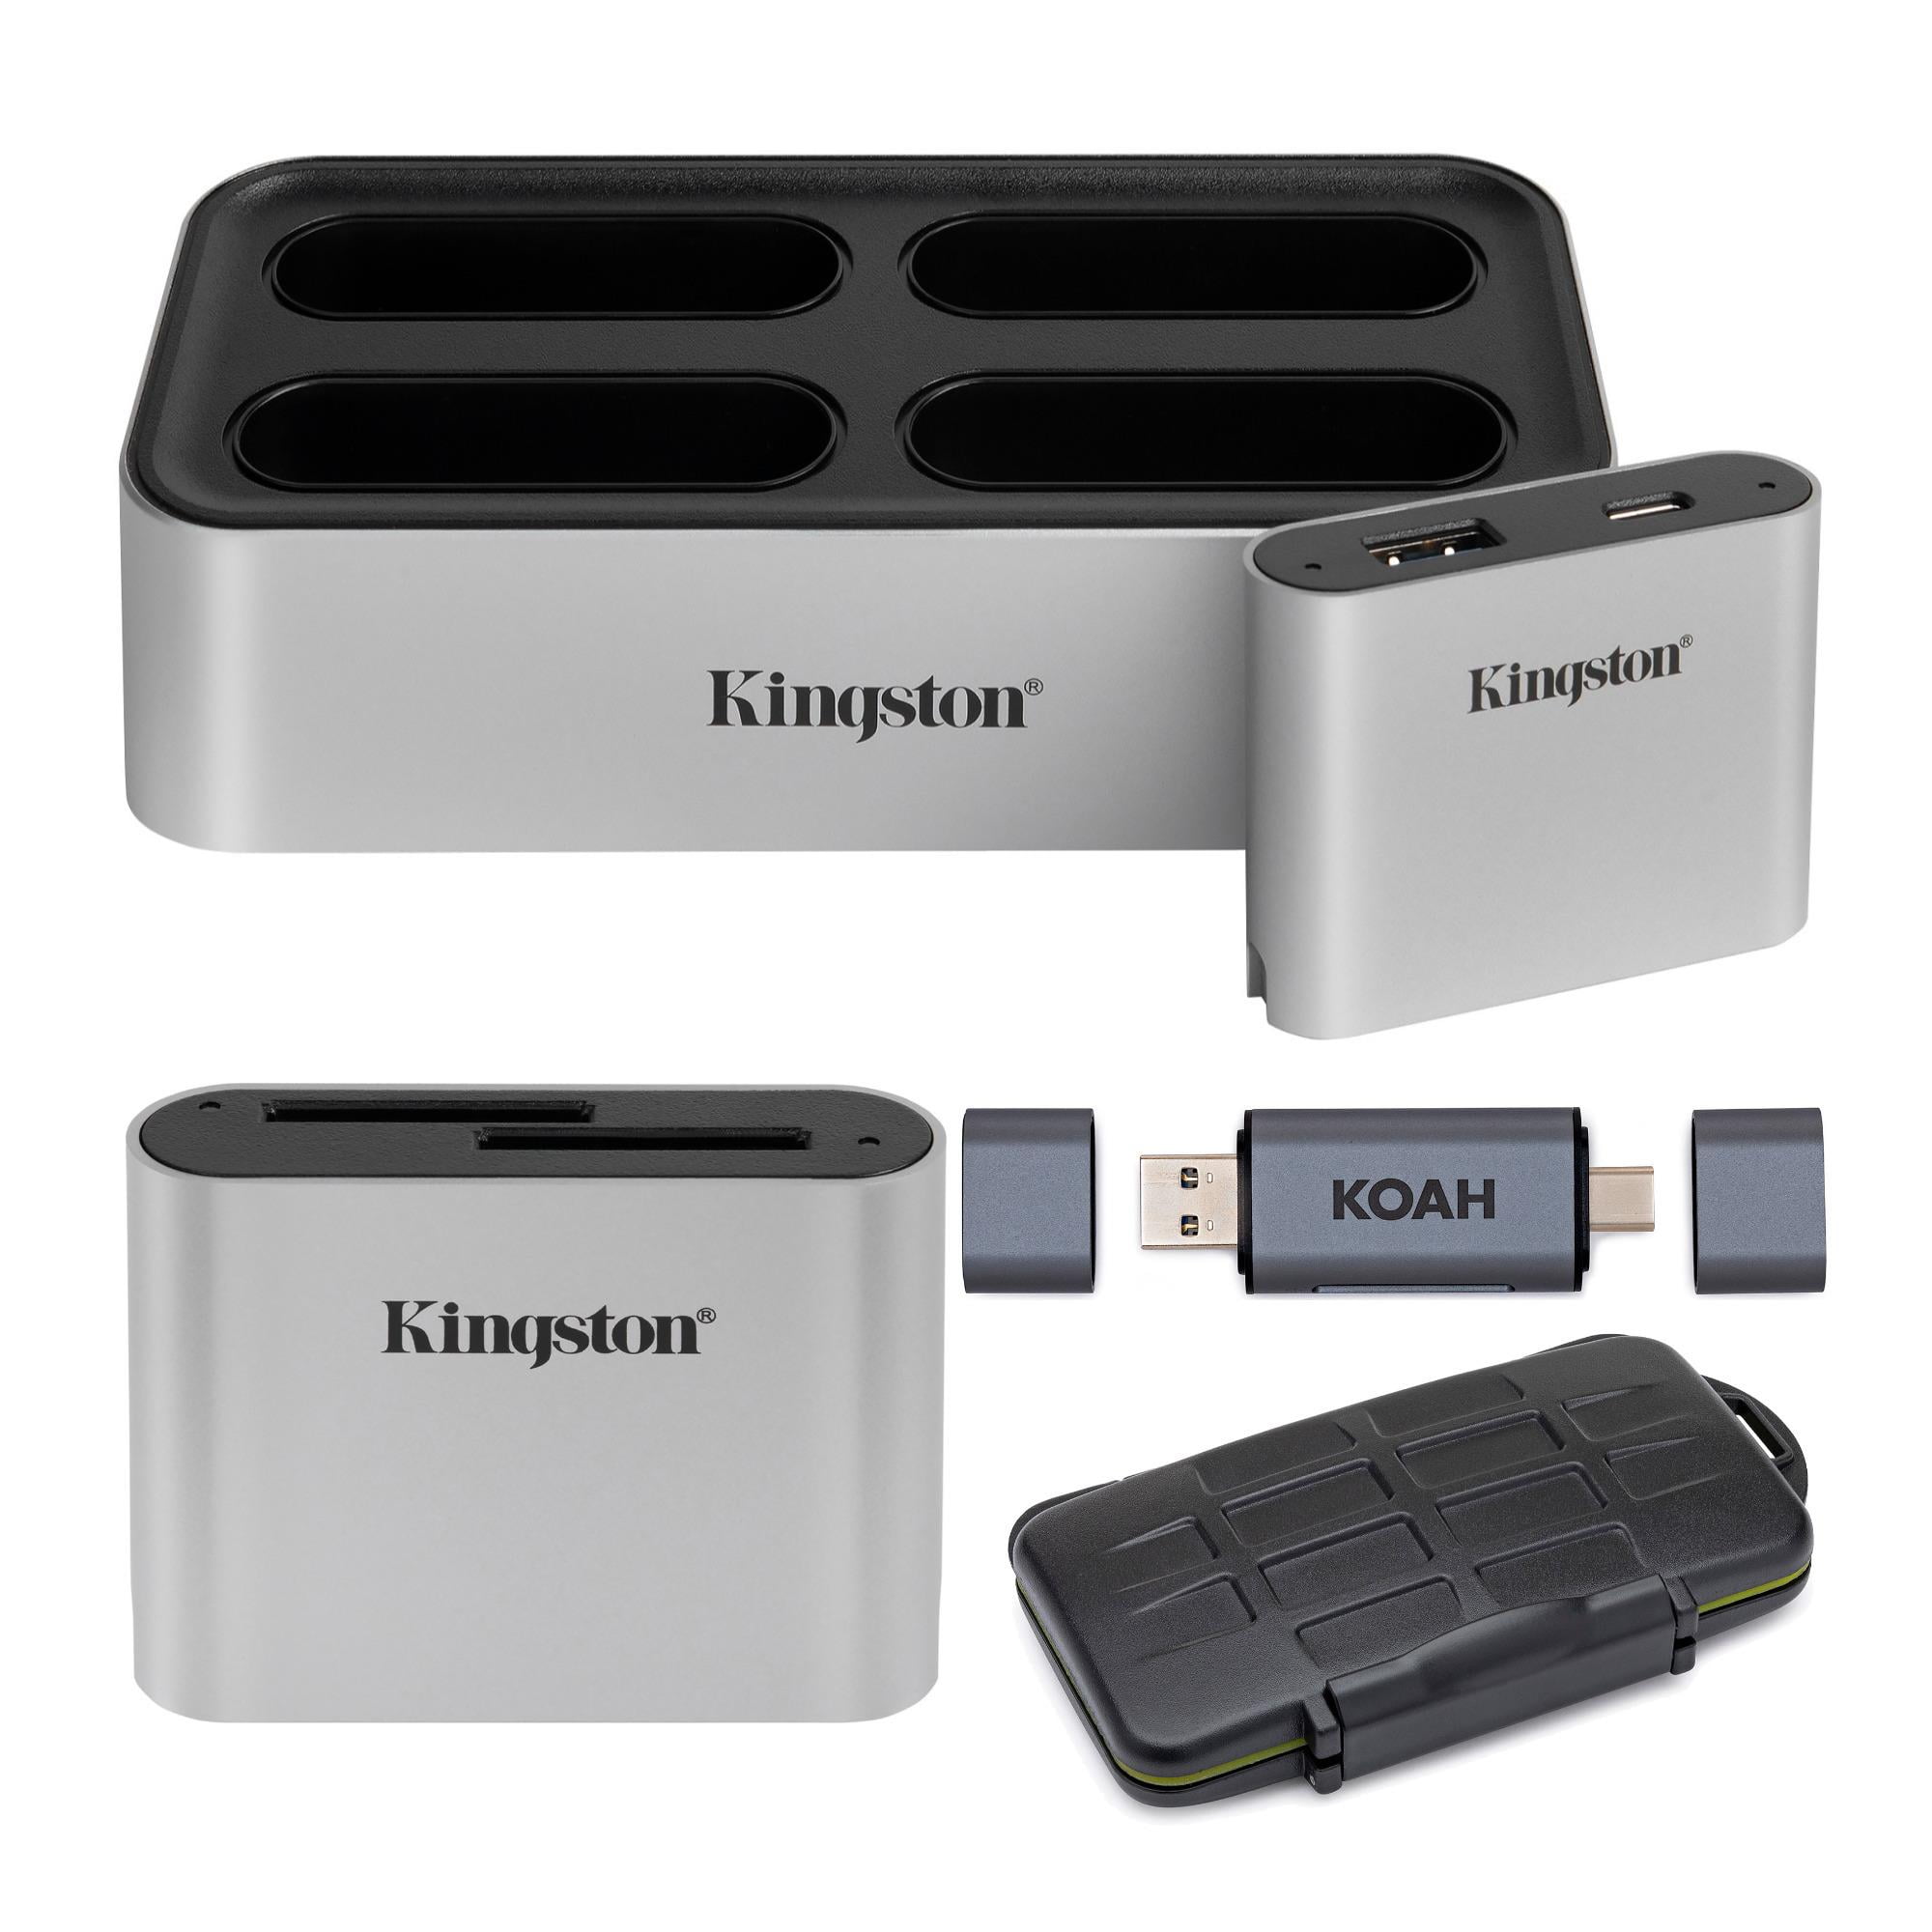 USB-хаб Kingston Nucleum. Кингстон Hub 2 ТБ цена. Kingston usb 3.2 gen 1